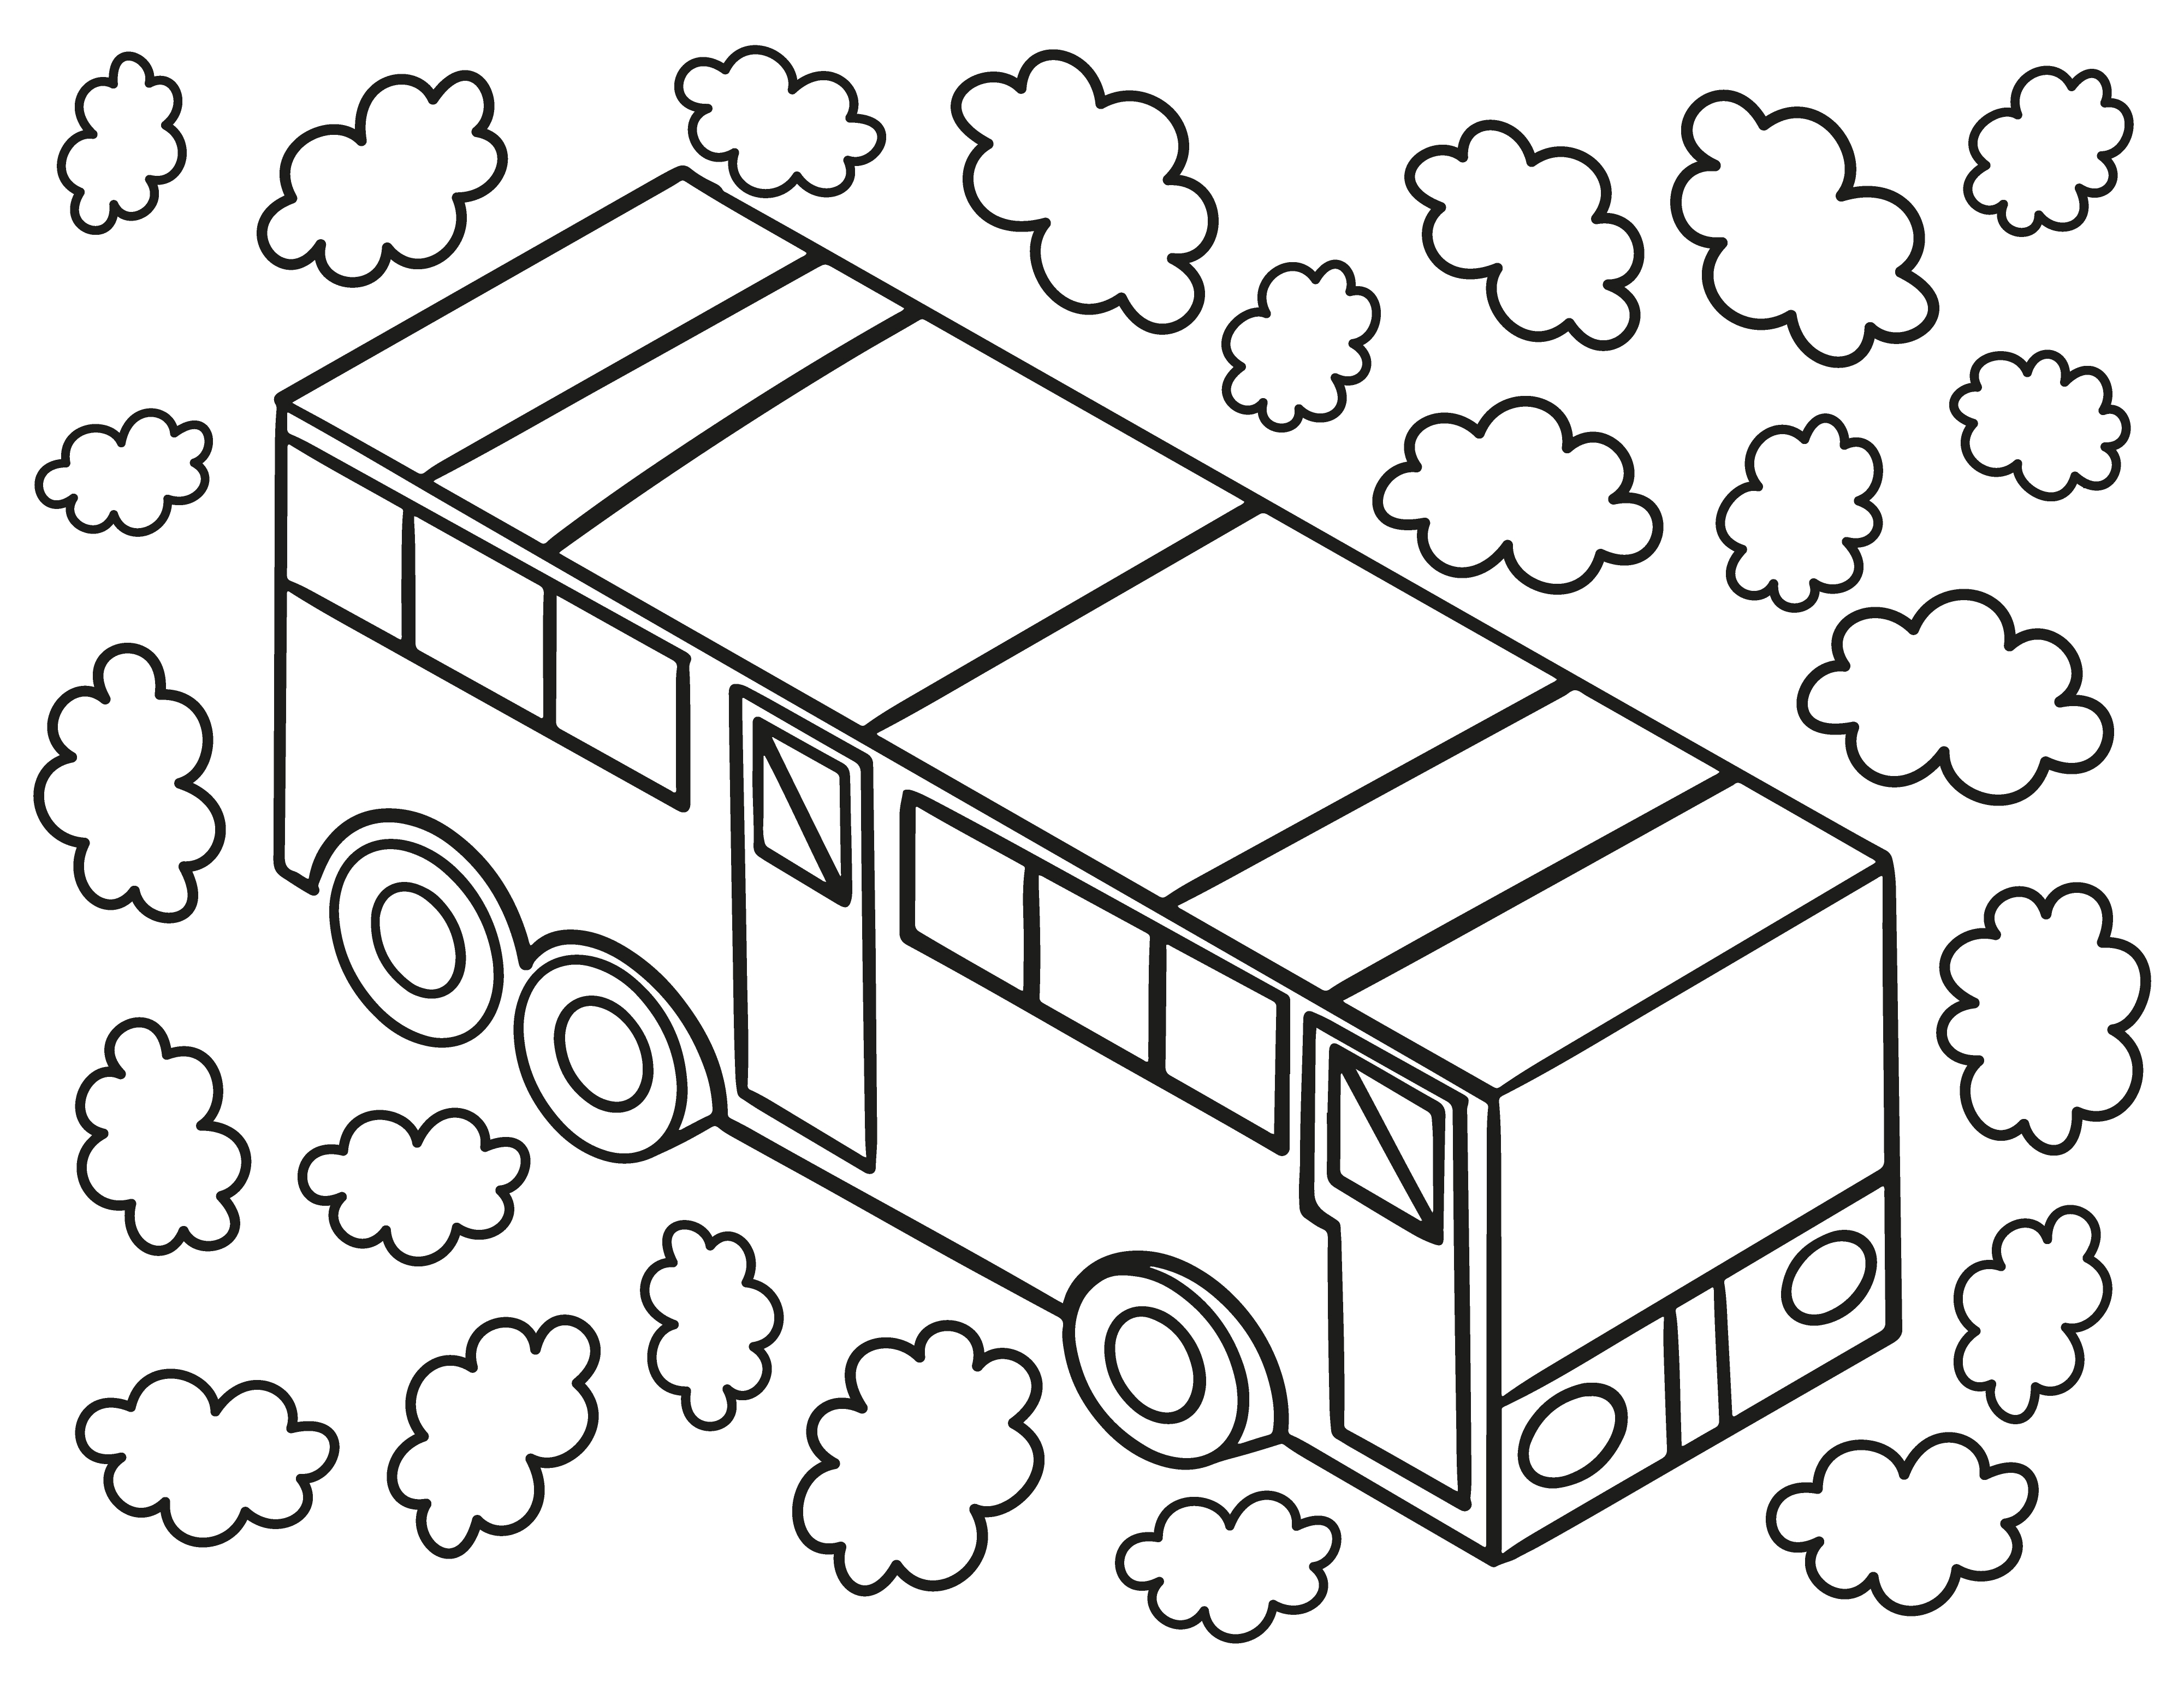 Раскраска игрушечный автобус с облачками формата А4 в высоком качестве